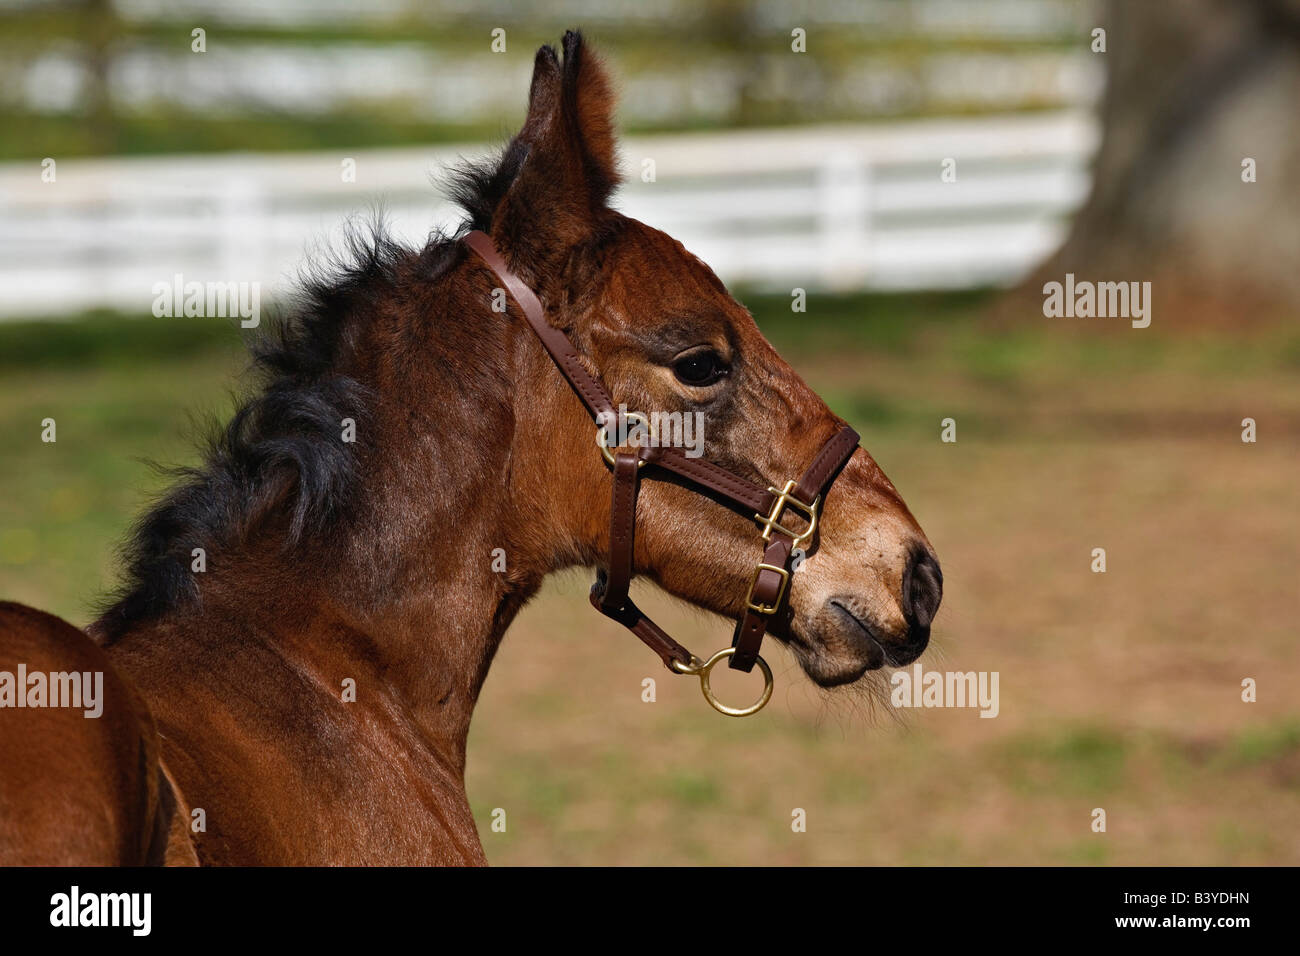 Young colt, Kentucky Horse Park, Lexington, Kentucky Stock Photo